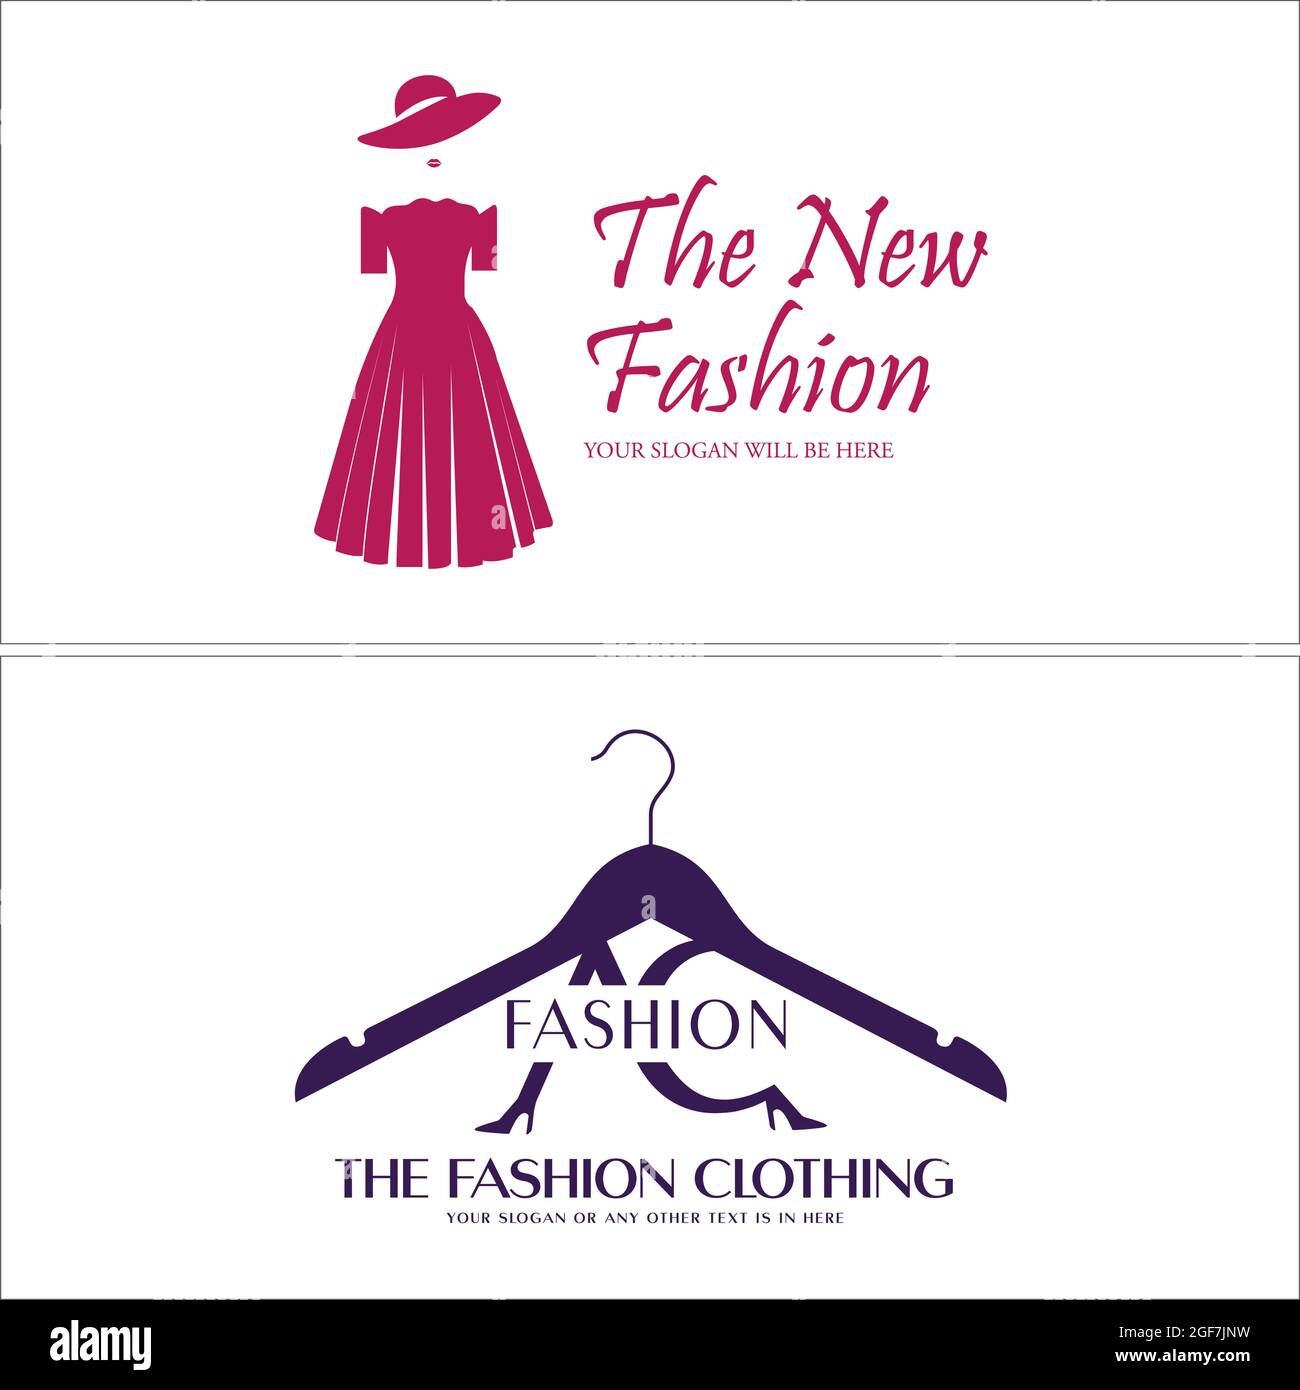 women s clothing fashion logo - herculescyclingclub.net